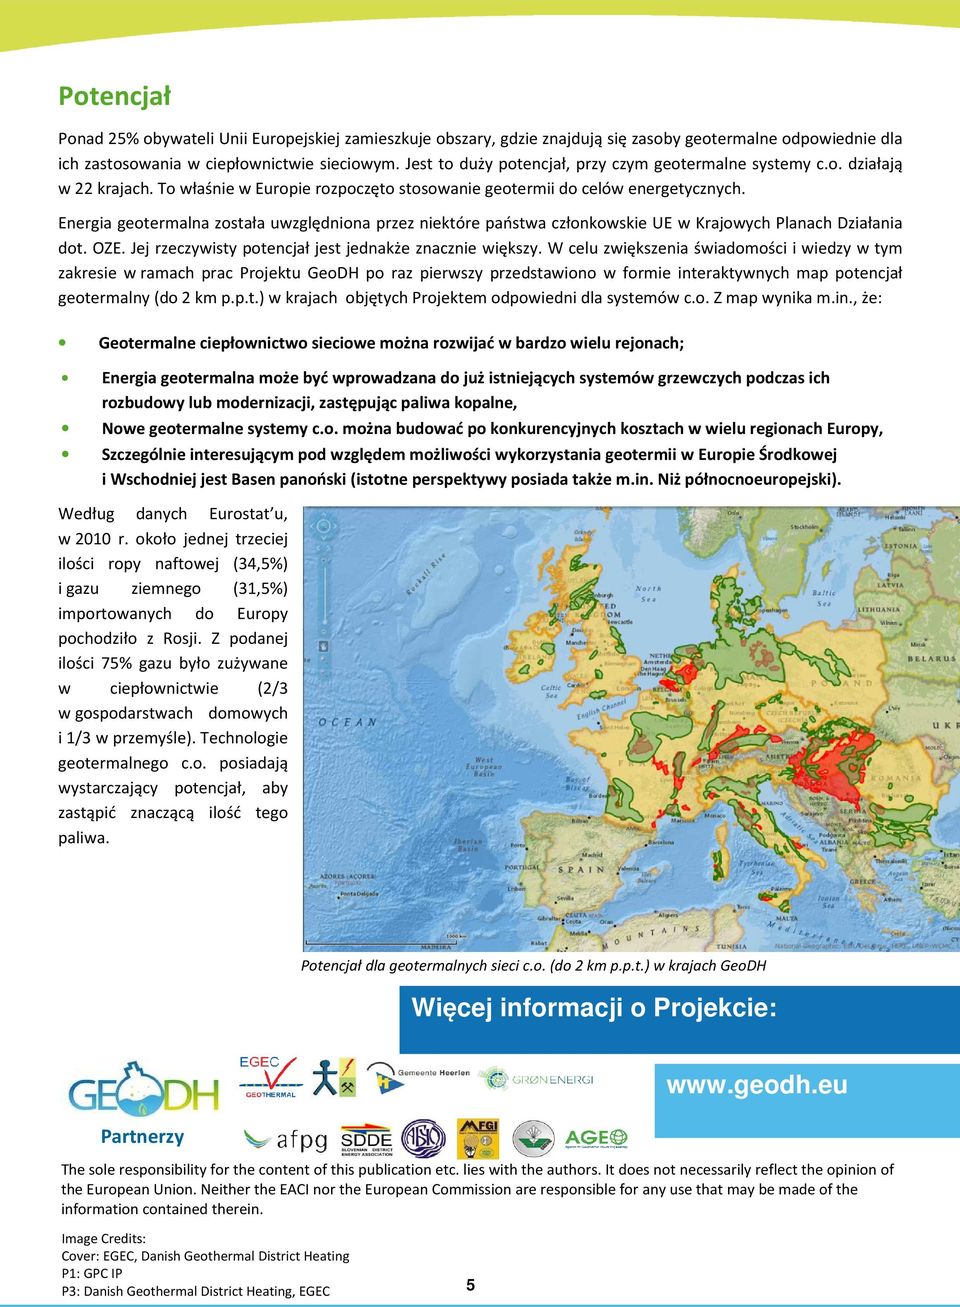 Energia geotermalna została uwzględniona przez niektóre państwa członkowskie UE w Krajowych Planach Działania dot. OZE. Jej rzeczywisty potencjał jest jednakże znacznie większy.